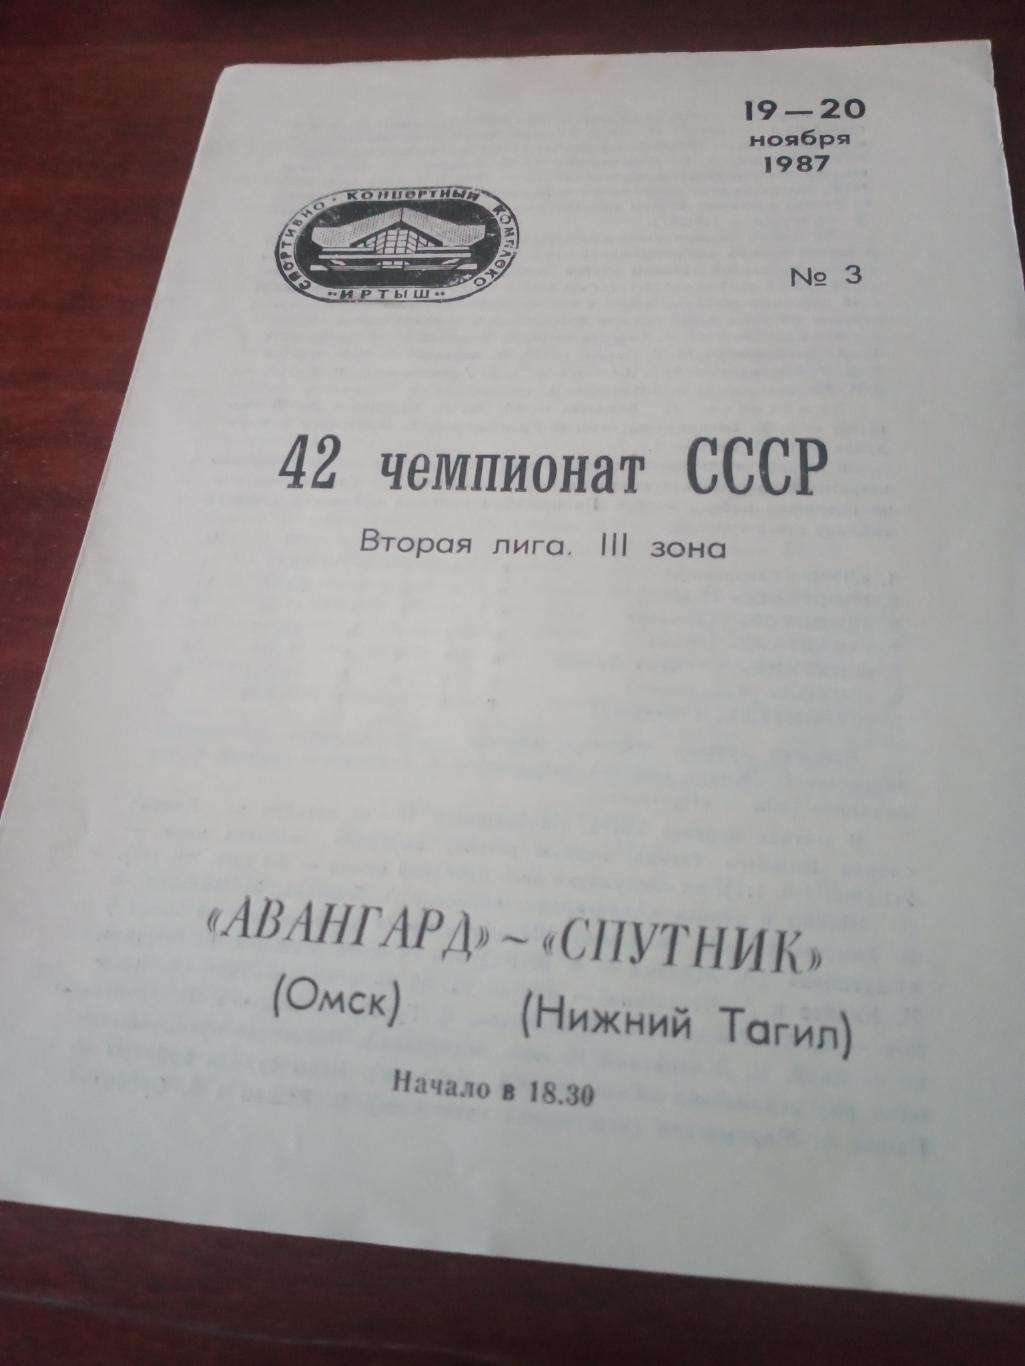 Авангард Омск - Спутник Нижний Тагил. 19 и 20 ноября 1987 год